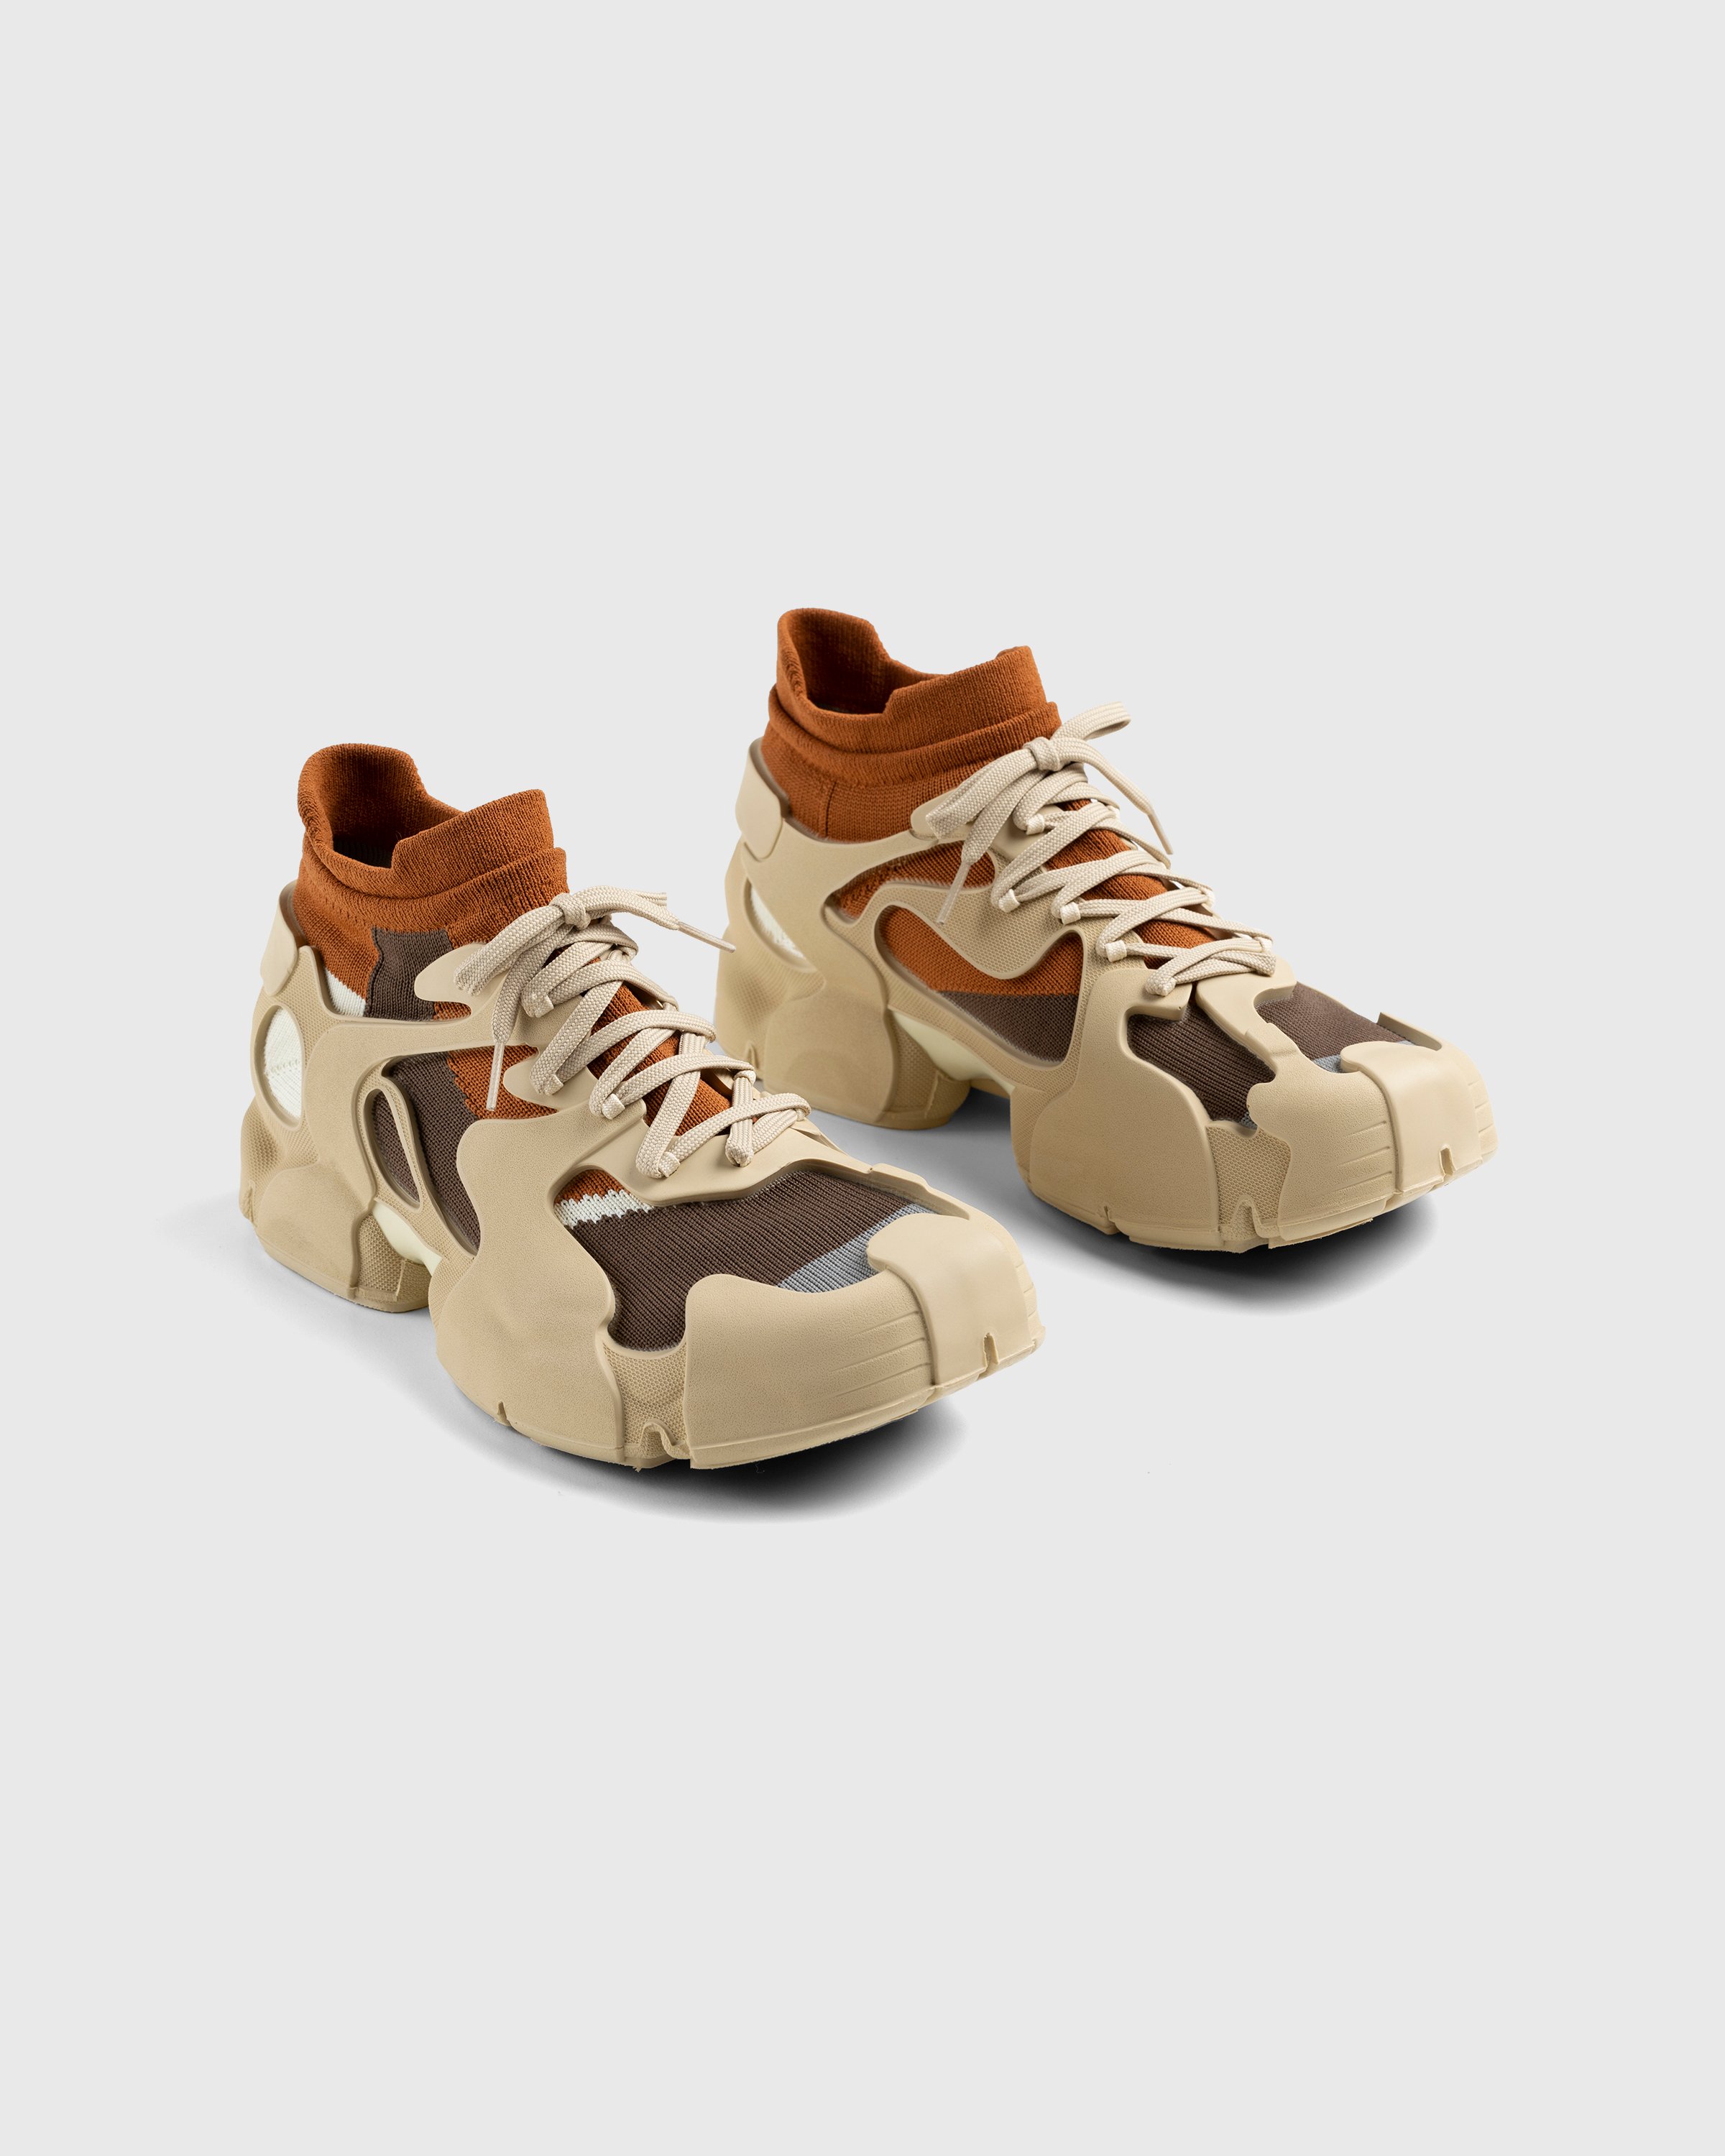 CAMPERLAB - Tossu Botijo-Fax-Oleo - Footwear - Brown - Image 2